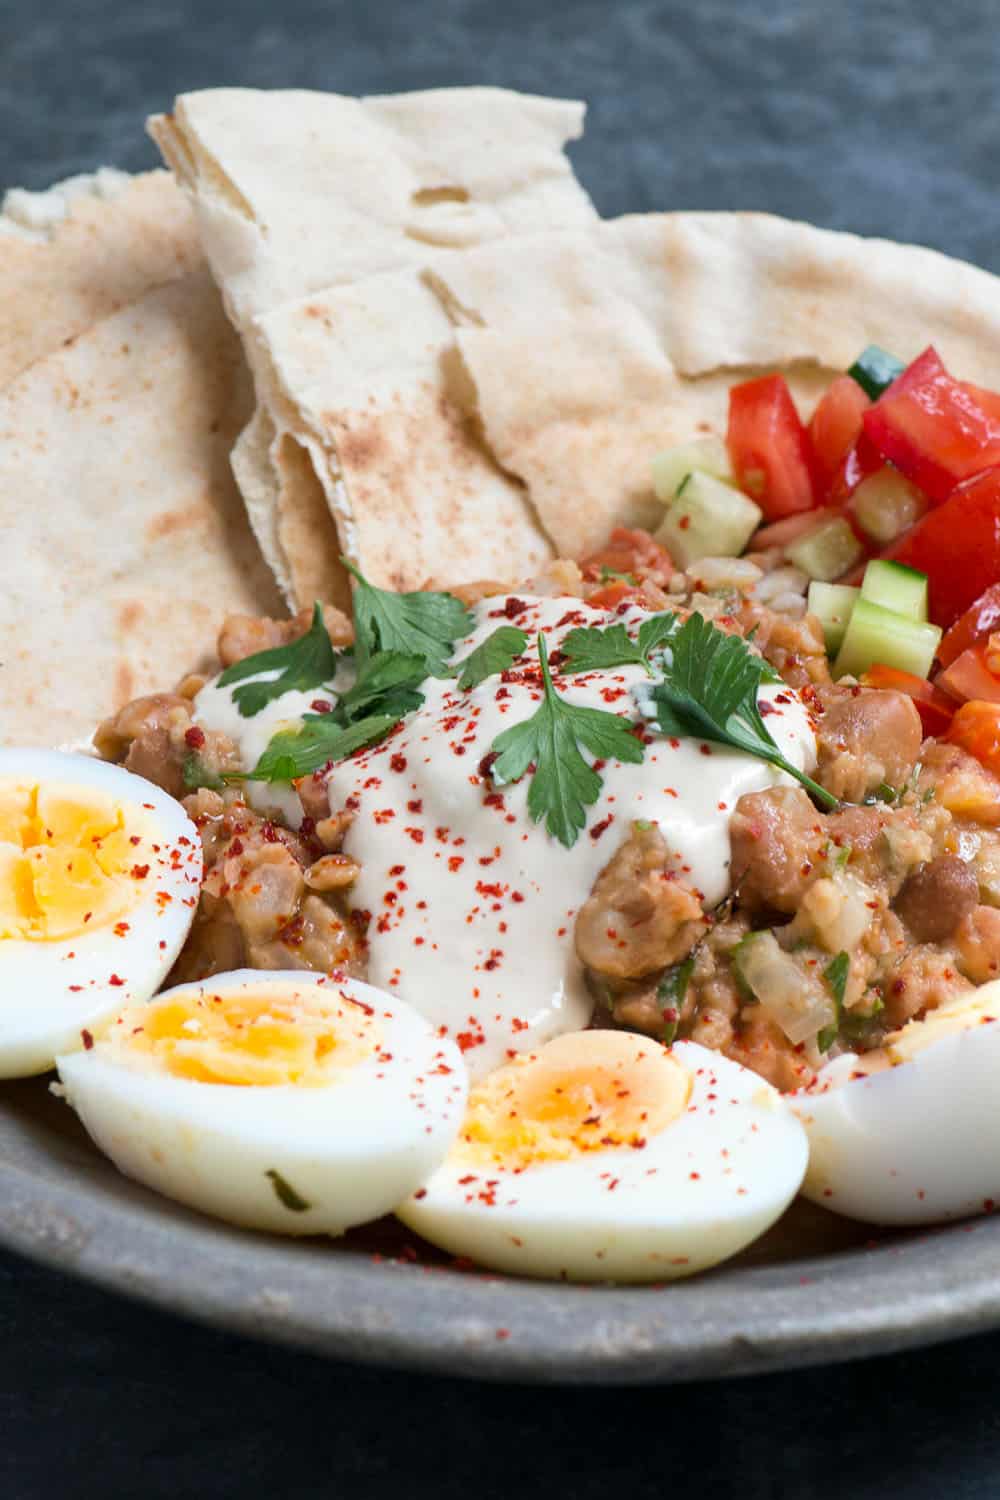 Egyptian Breakfast Ful Medames Recipe